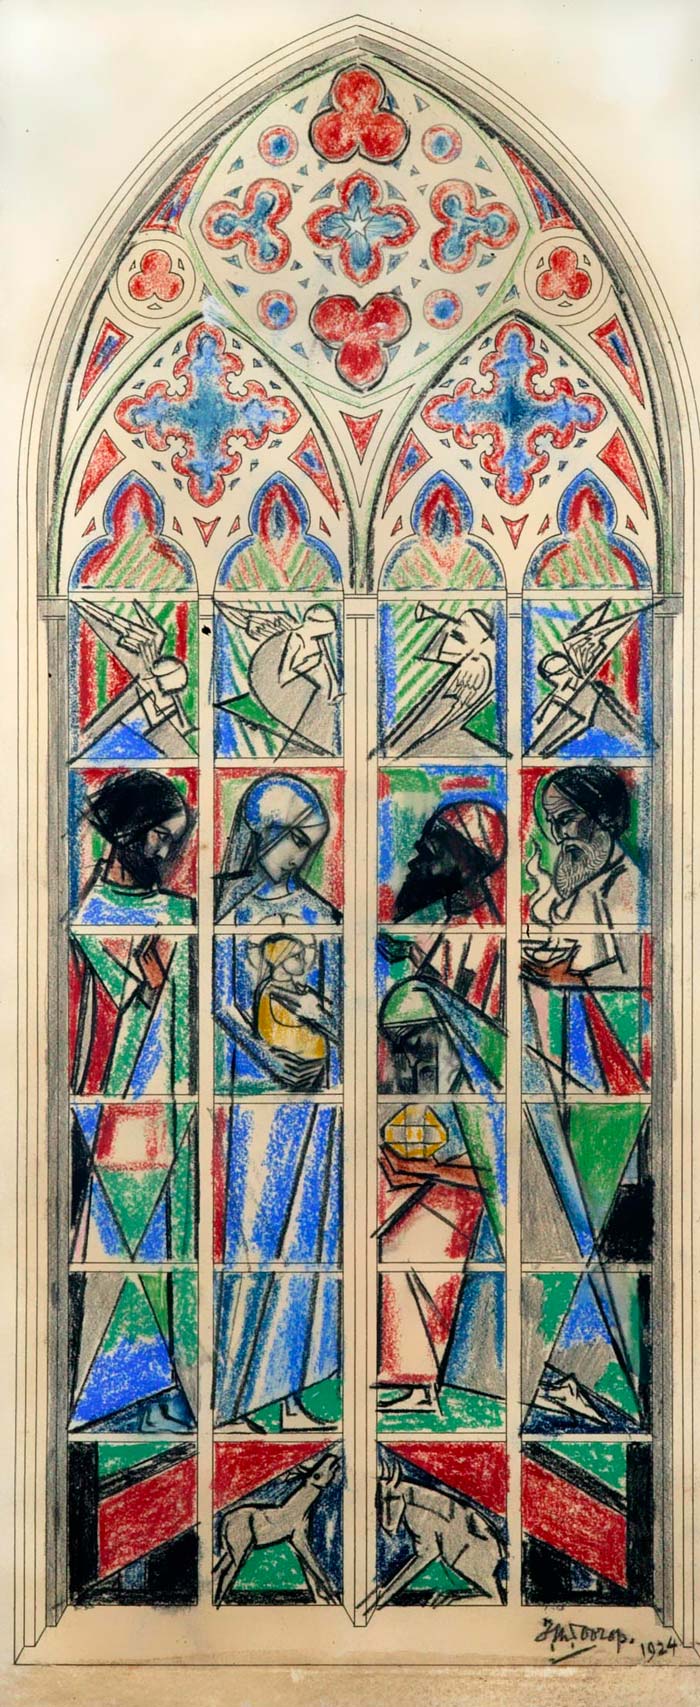 Ontwerp voor het Driekoningen-venster door Jan Toorop, 1924 (Catharijneconvent)